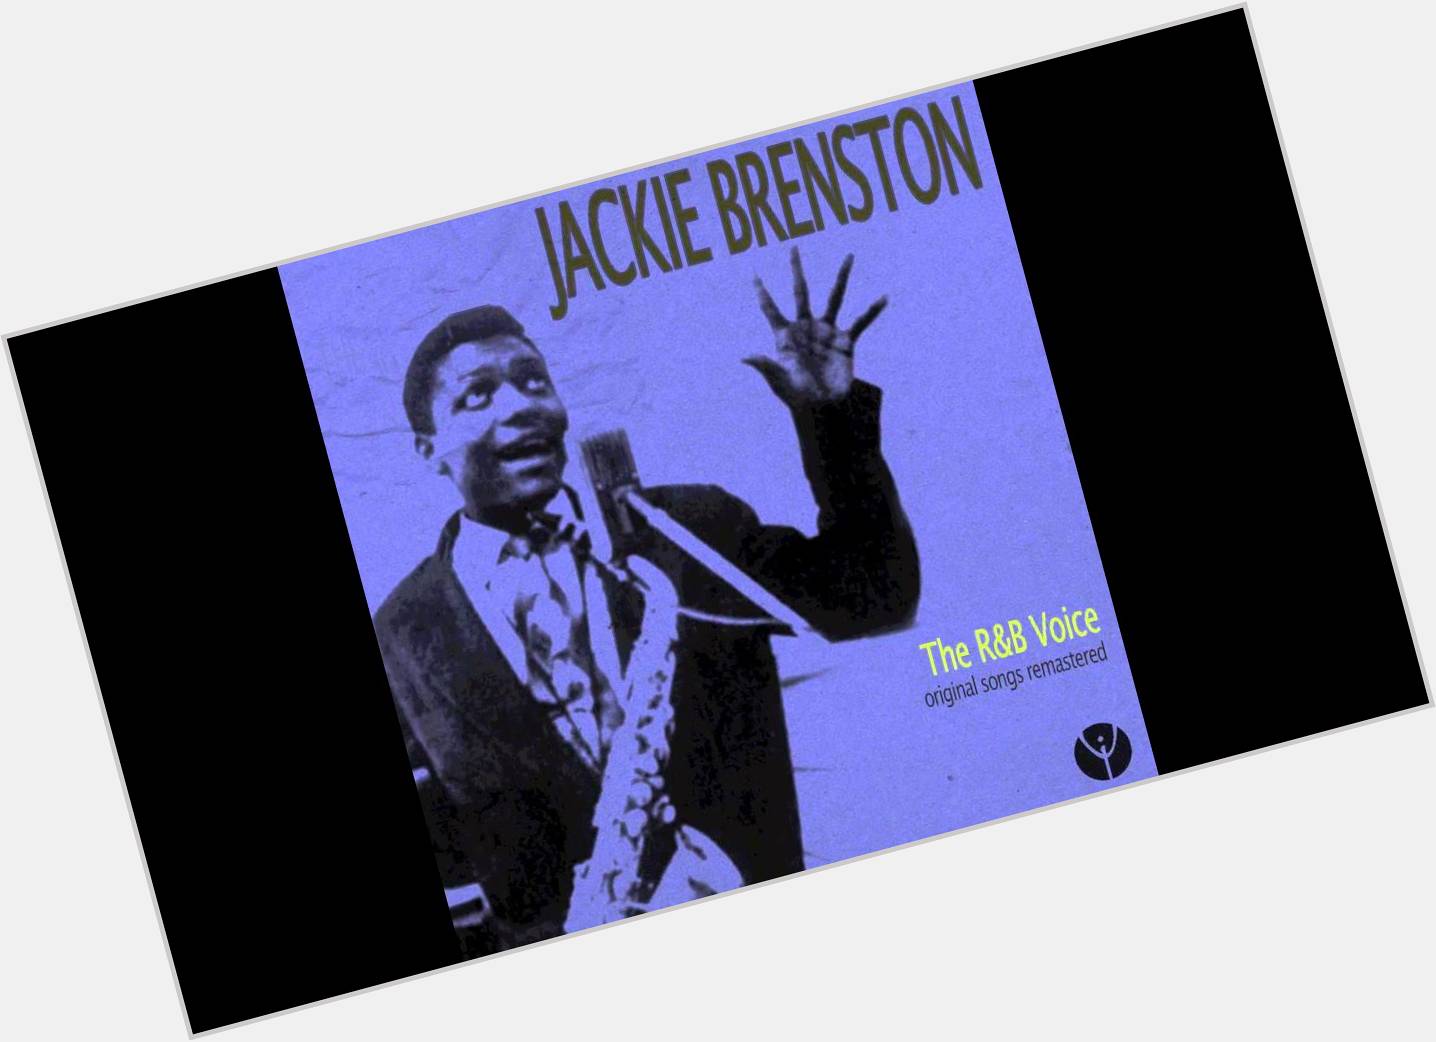 Jackie Brenston dating 2